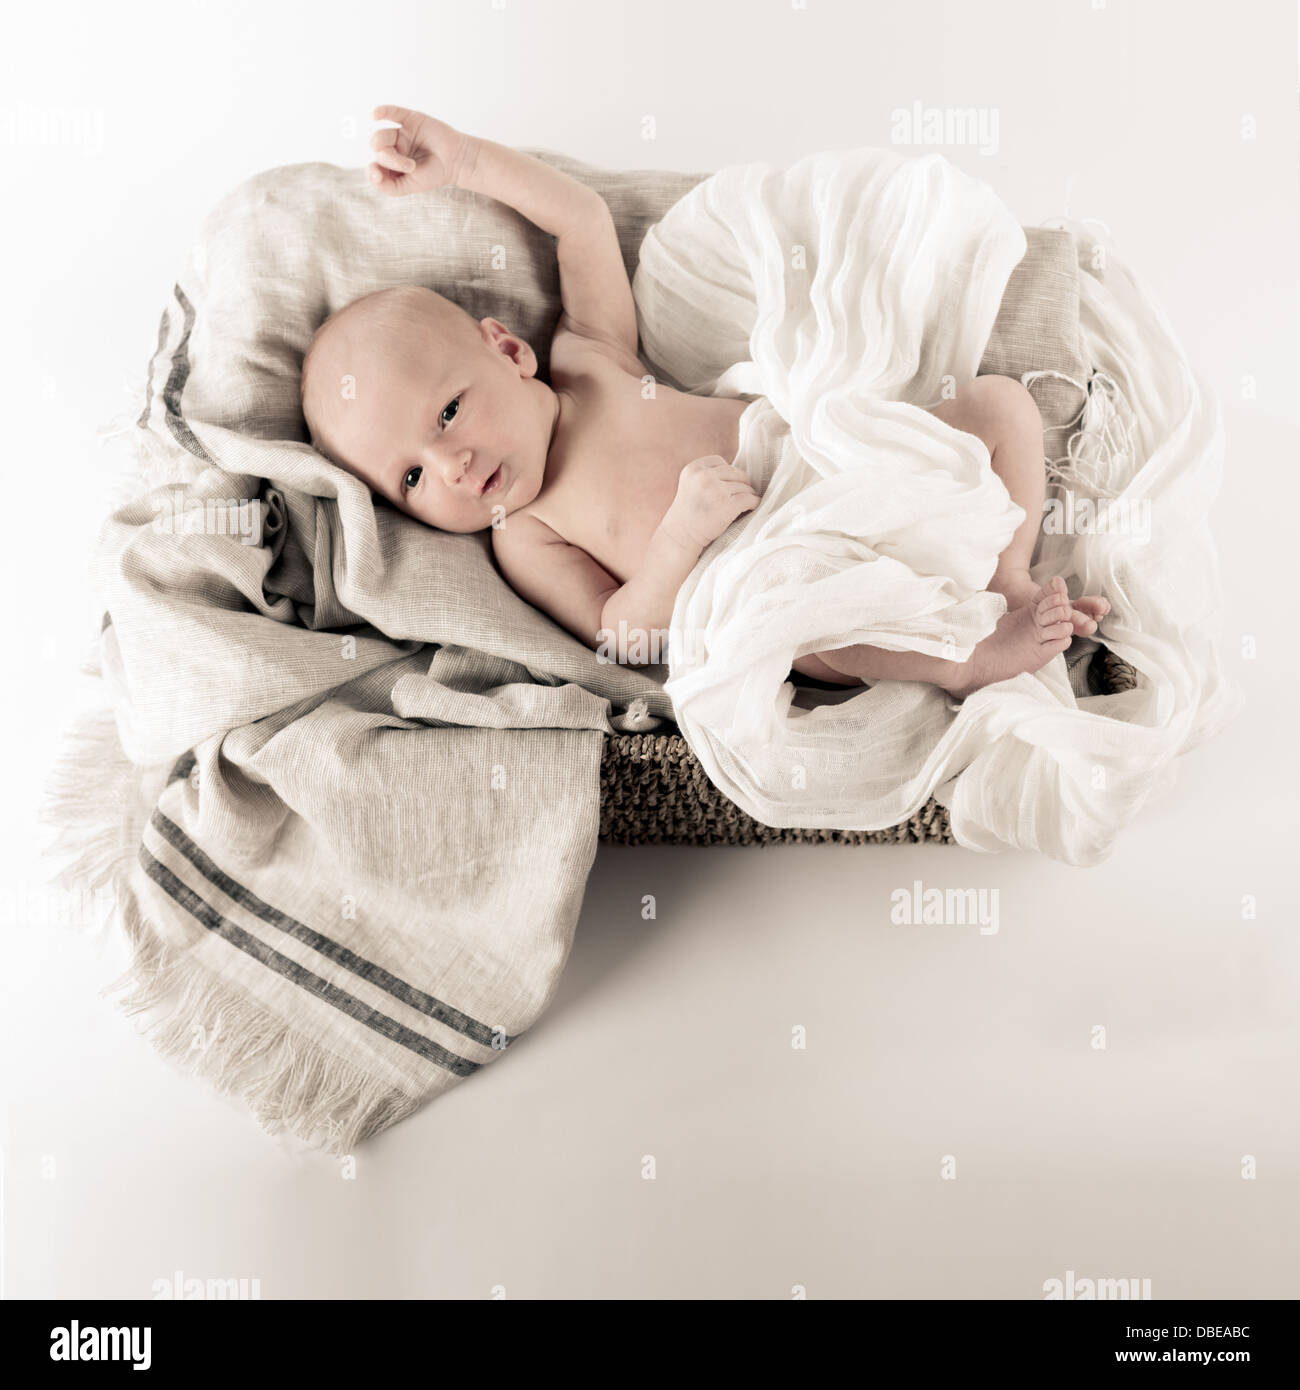 Niña Bebé Recién Nacido, Durmiendo En Una Canasta De Mimbre. Fotos,  retratos, imágenes y fotografía de archivo libres de derecho. Image 8713426